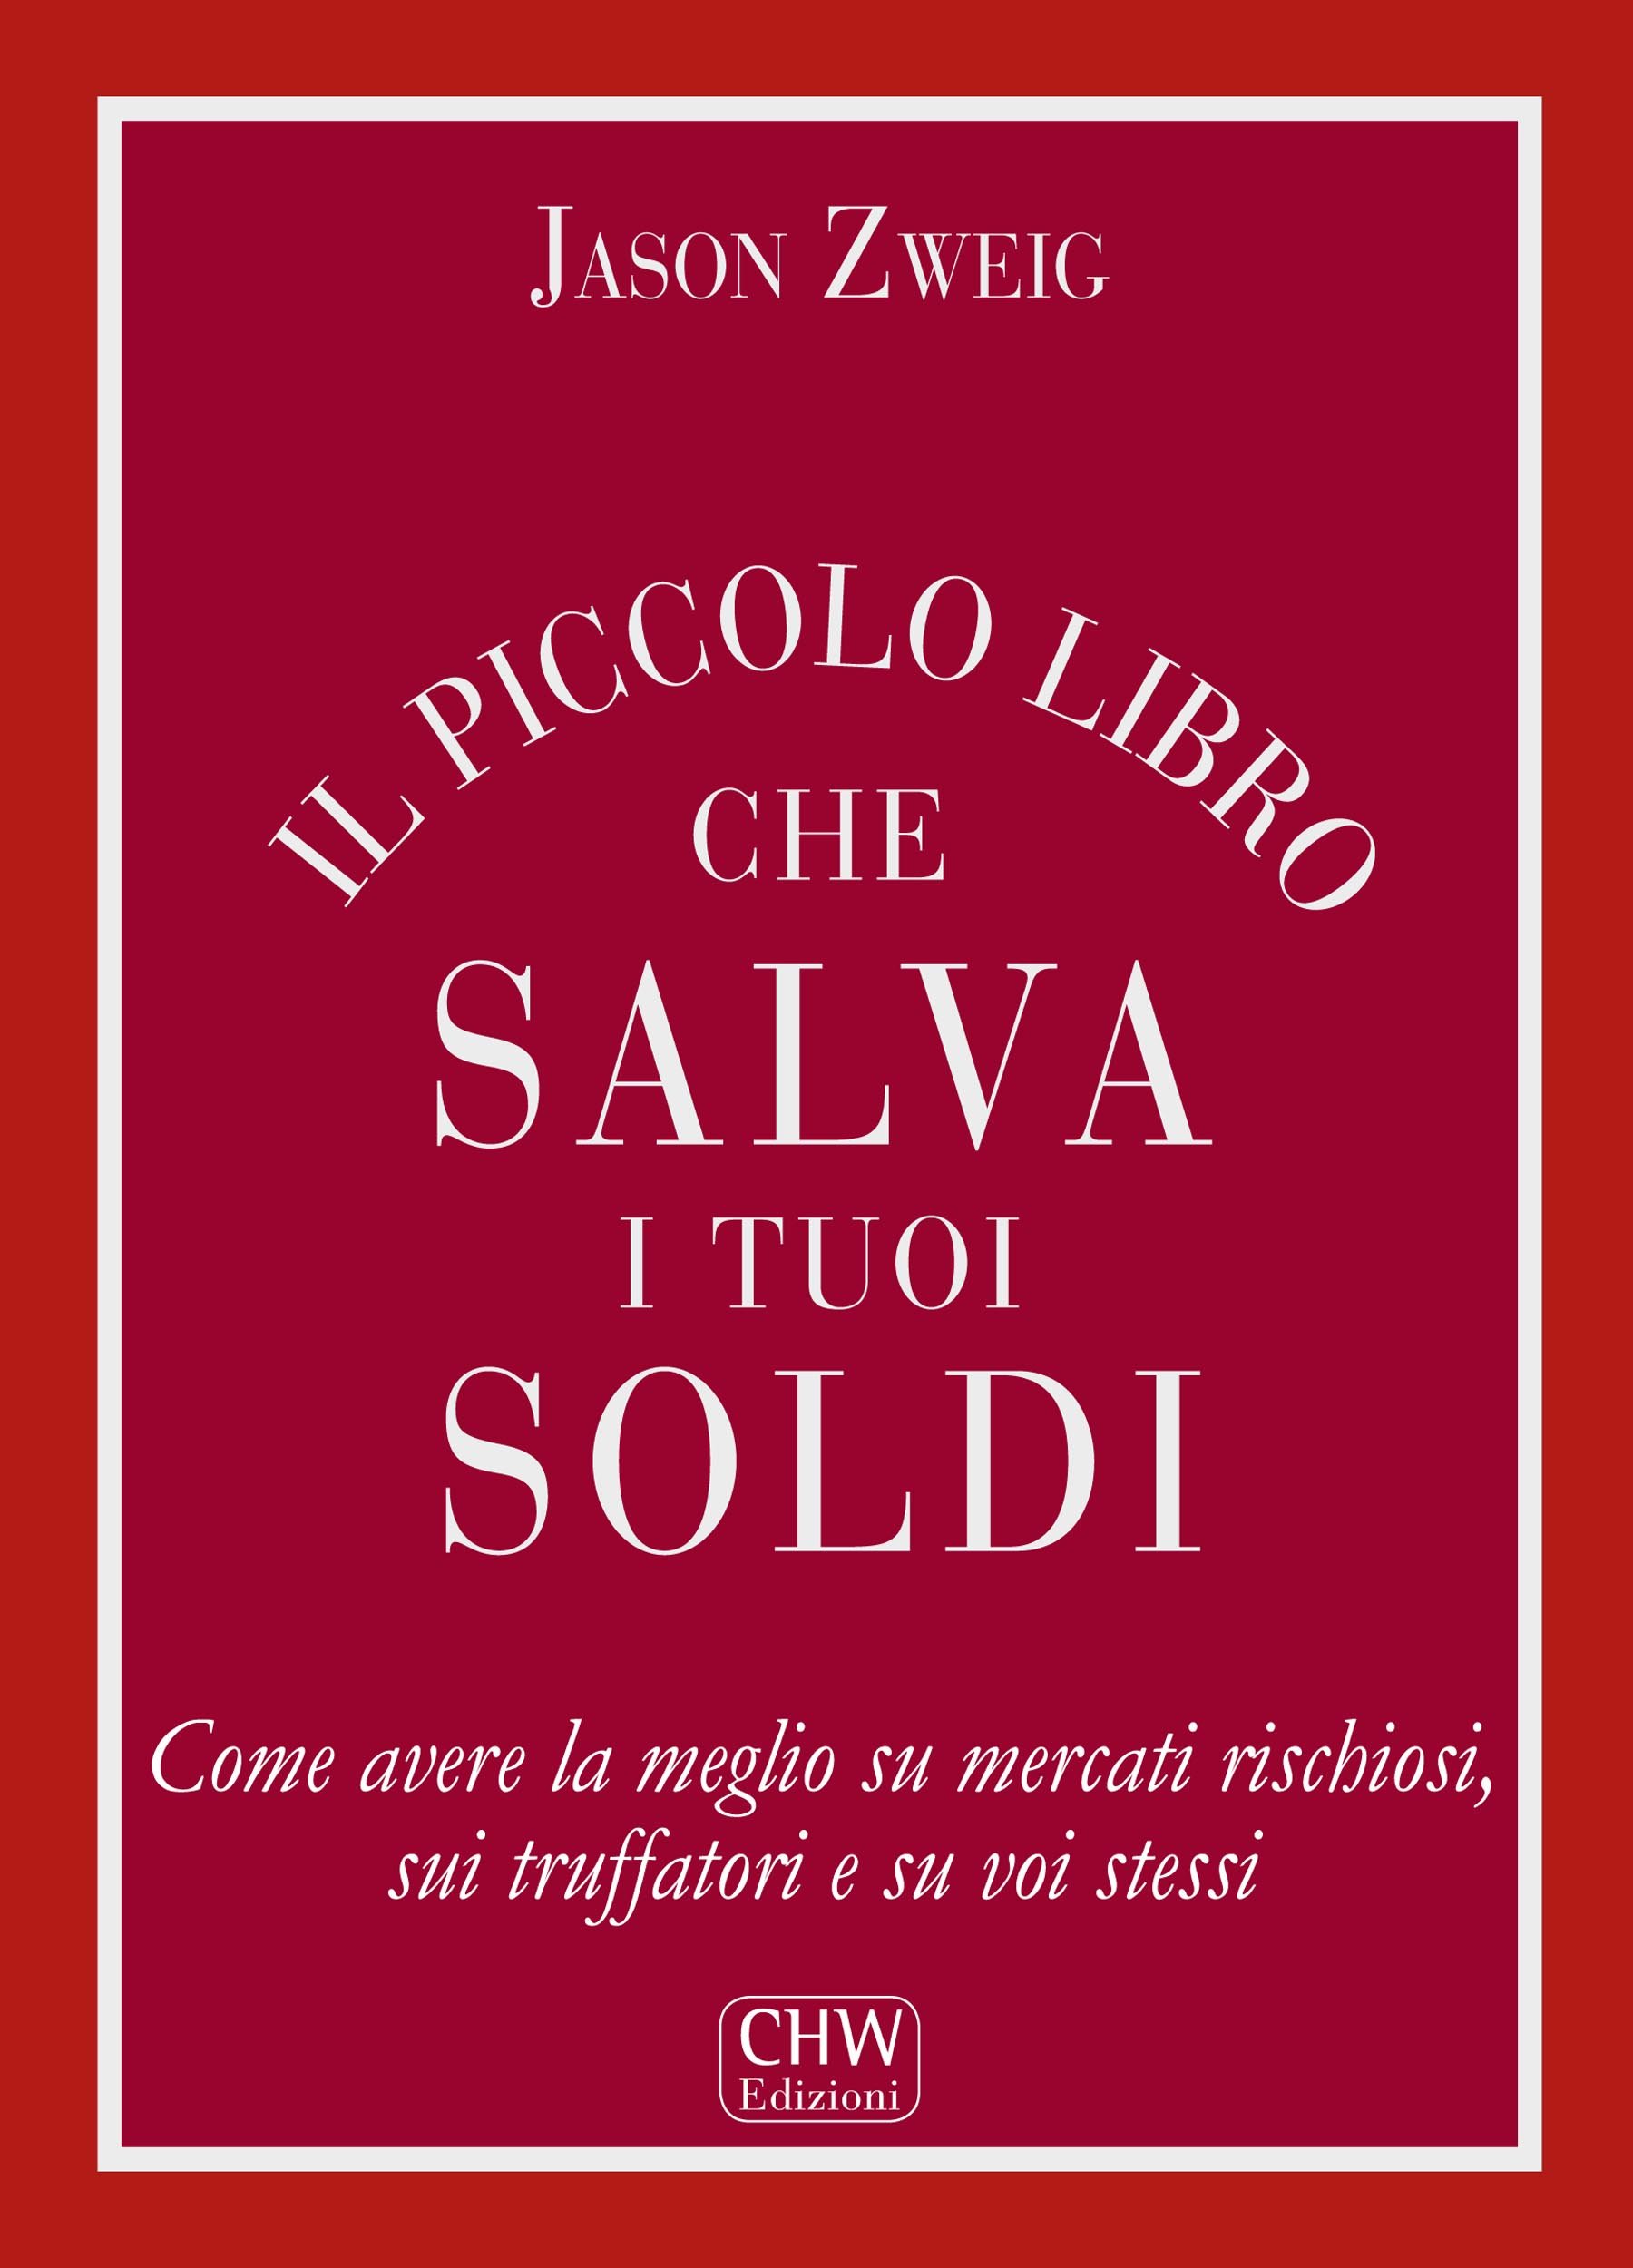 Il Piccolo Libro che Salva i tuoi Soldi (Italian Edition)